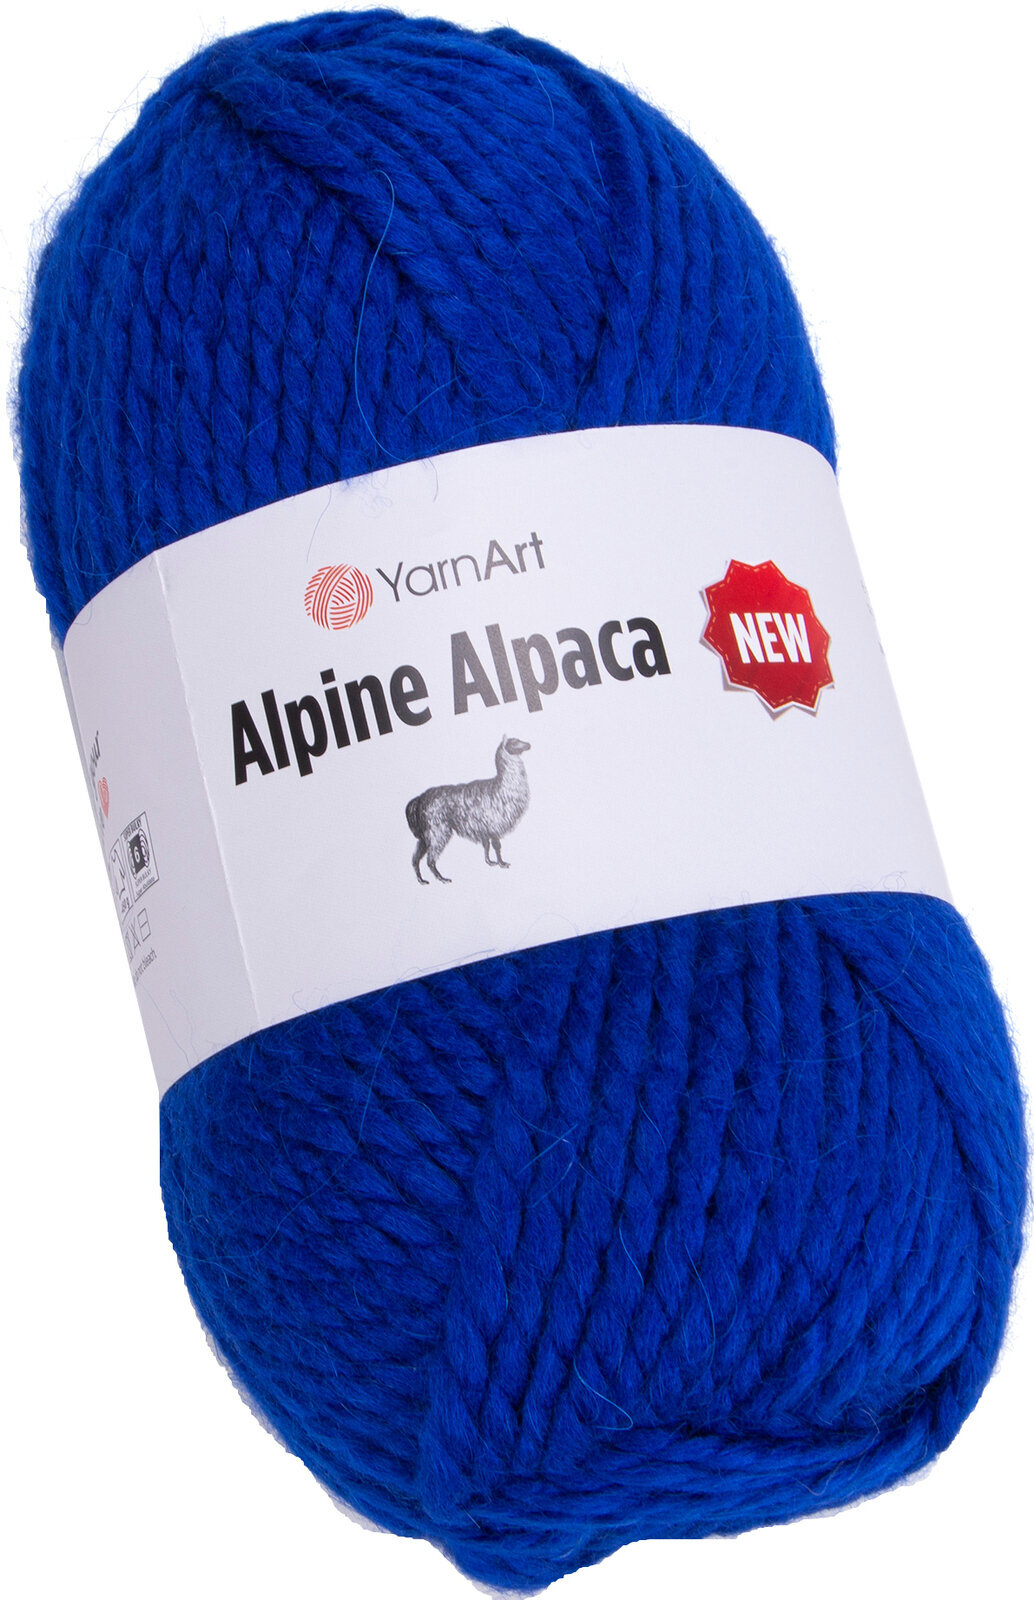 Fil à tricoter Yarn Art Alpine Alpaca New 1442